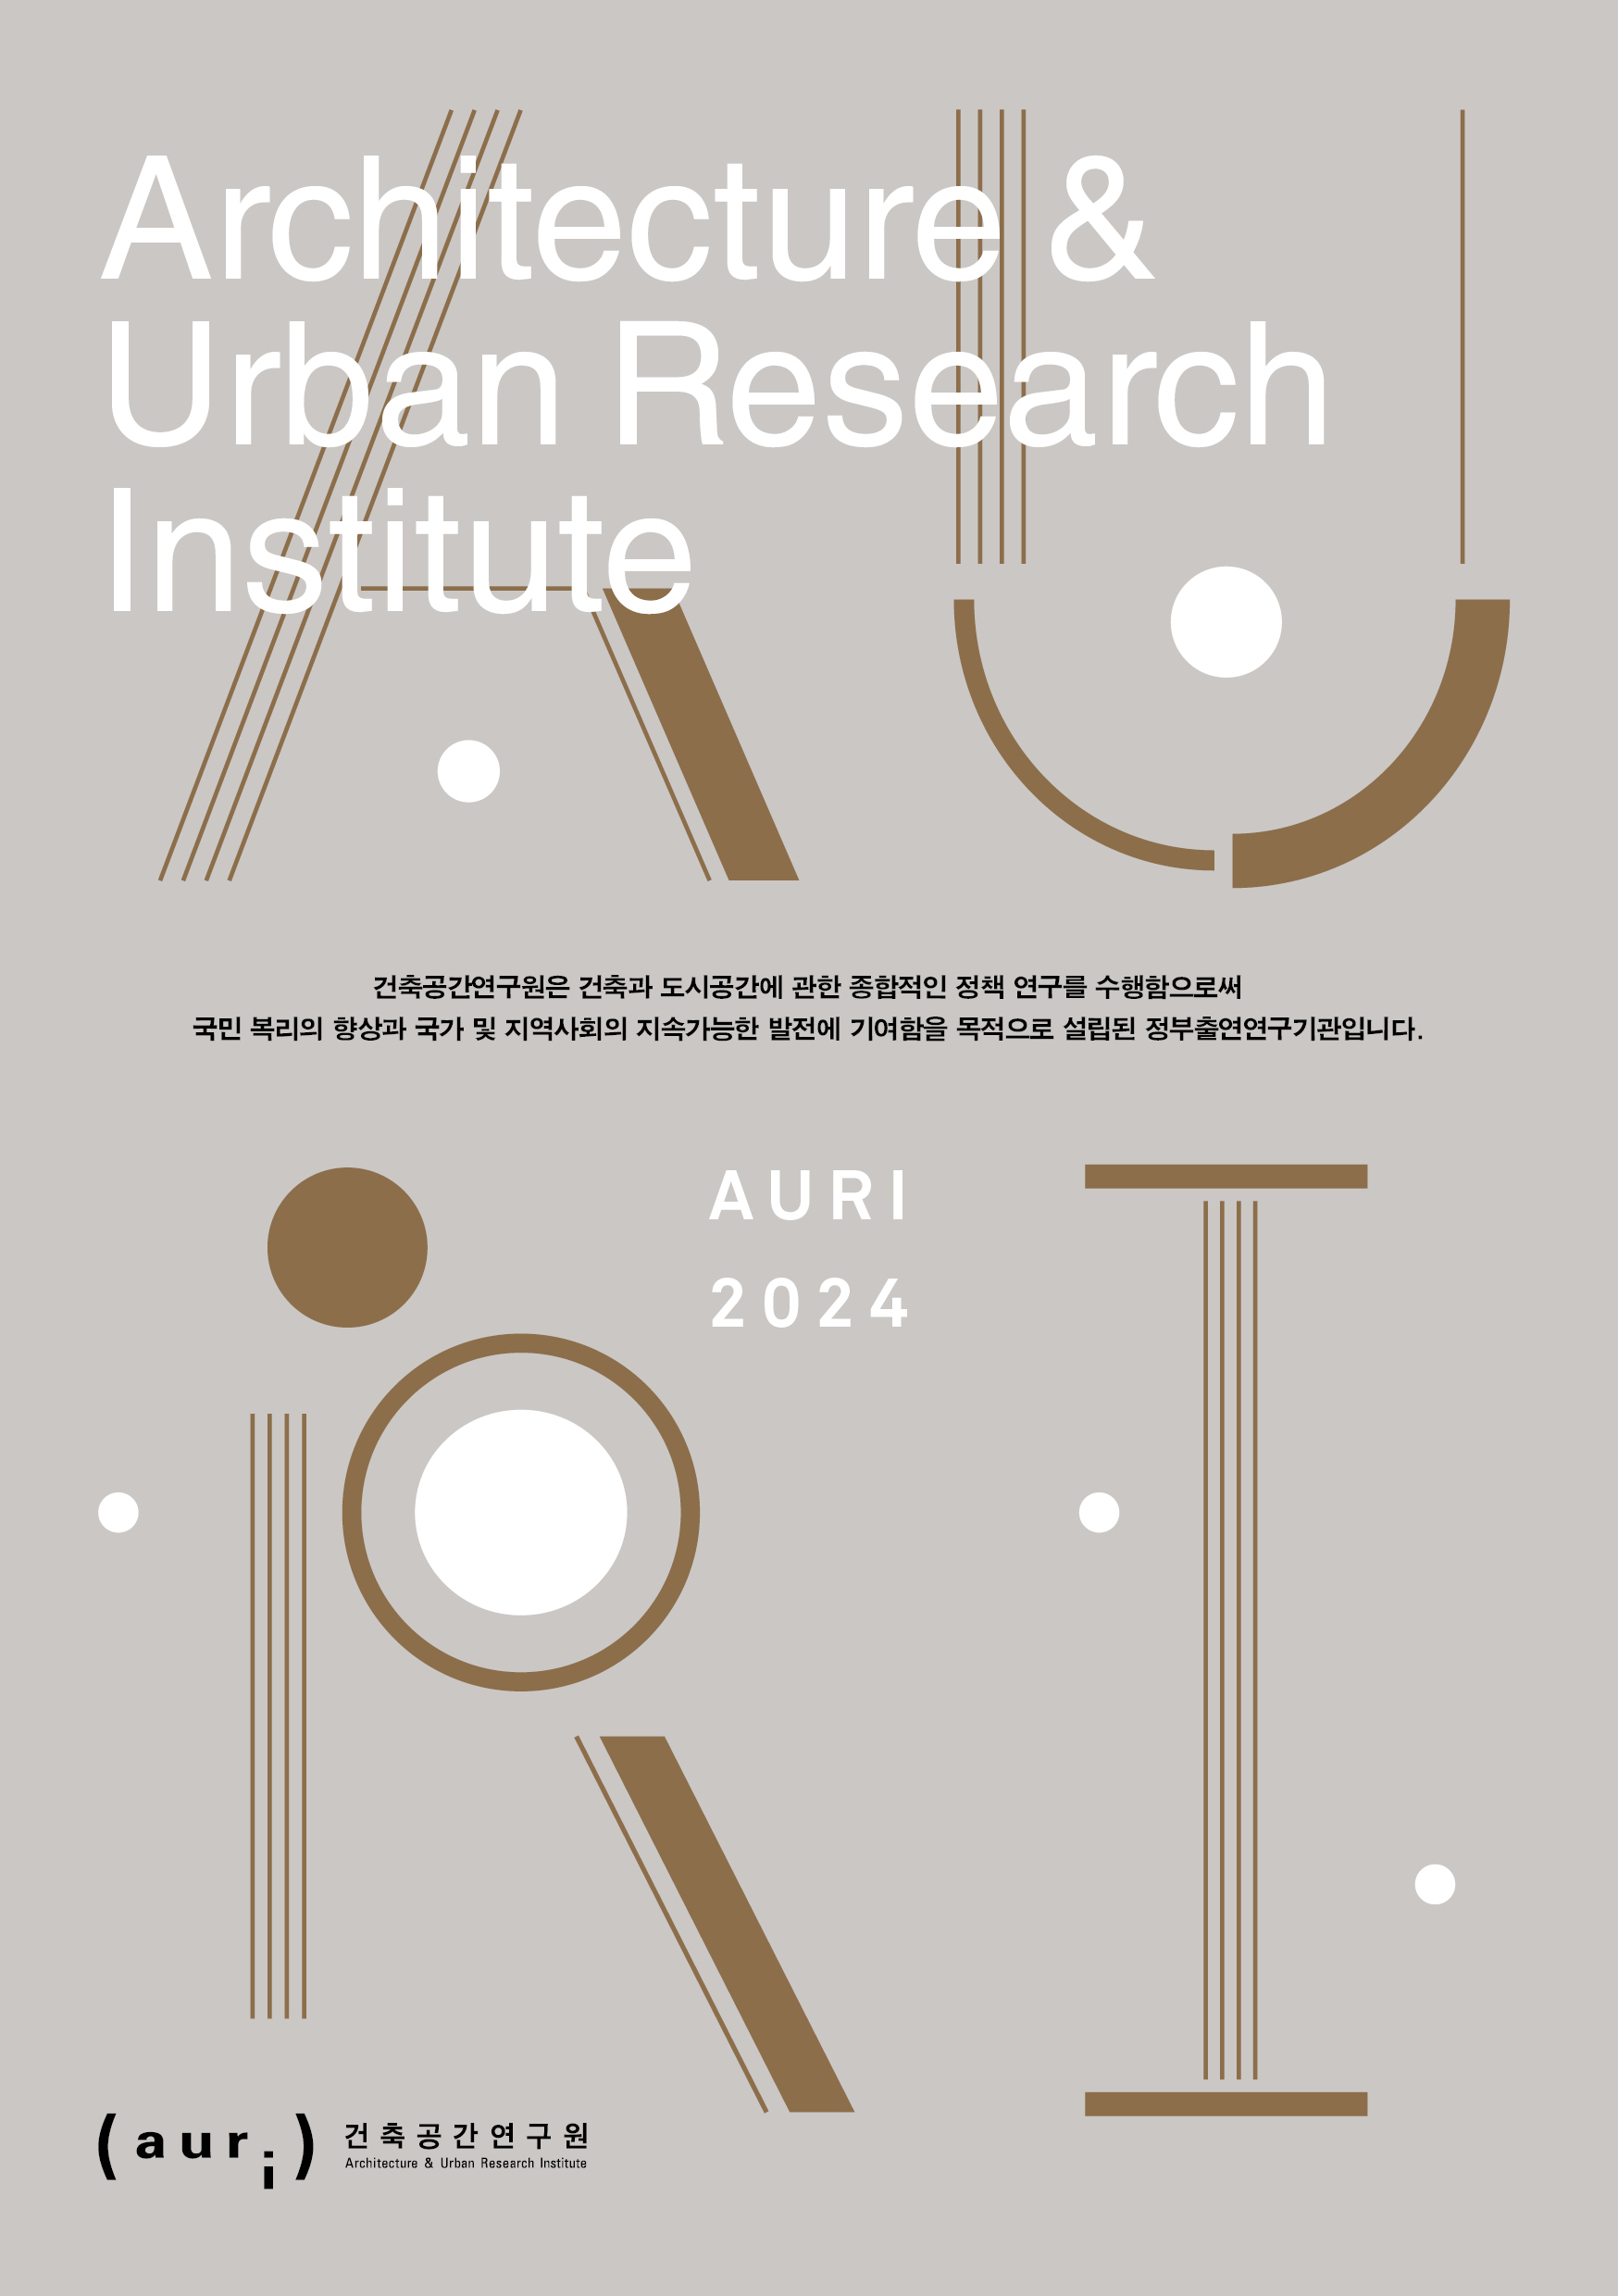 Architecture & Urban Research Institute 건축공간연구원은 건축과 도시공간에 관한 종합적인 정책 연구를 수행함으로써 국민 복리의 향상과 국가 및 지역사회의 지속가능한 발전에 기여함을 목적으로 설립된 정부출연연구기관입니다.